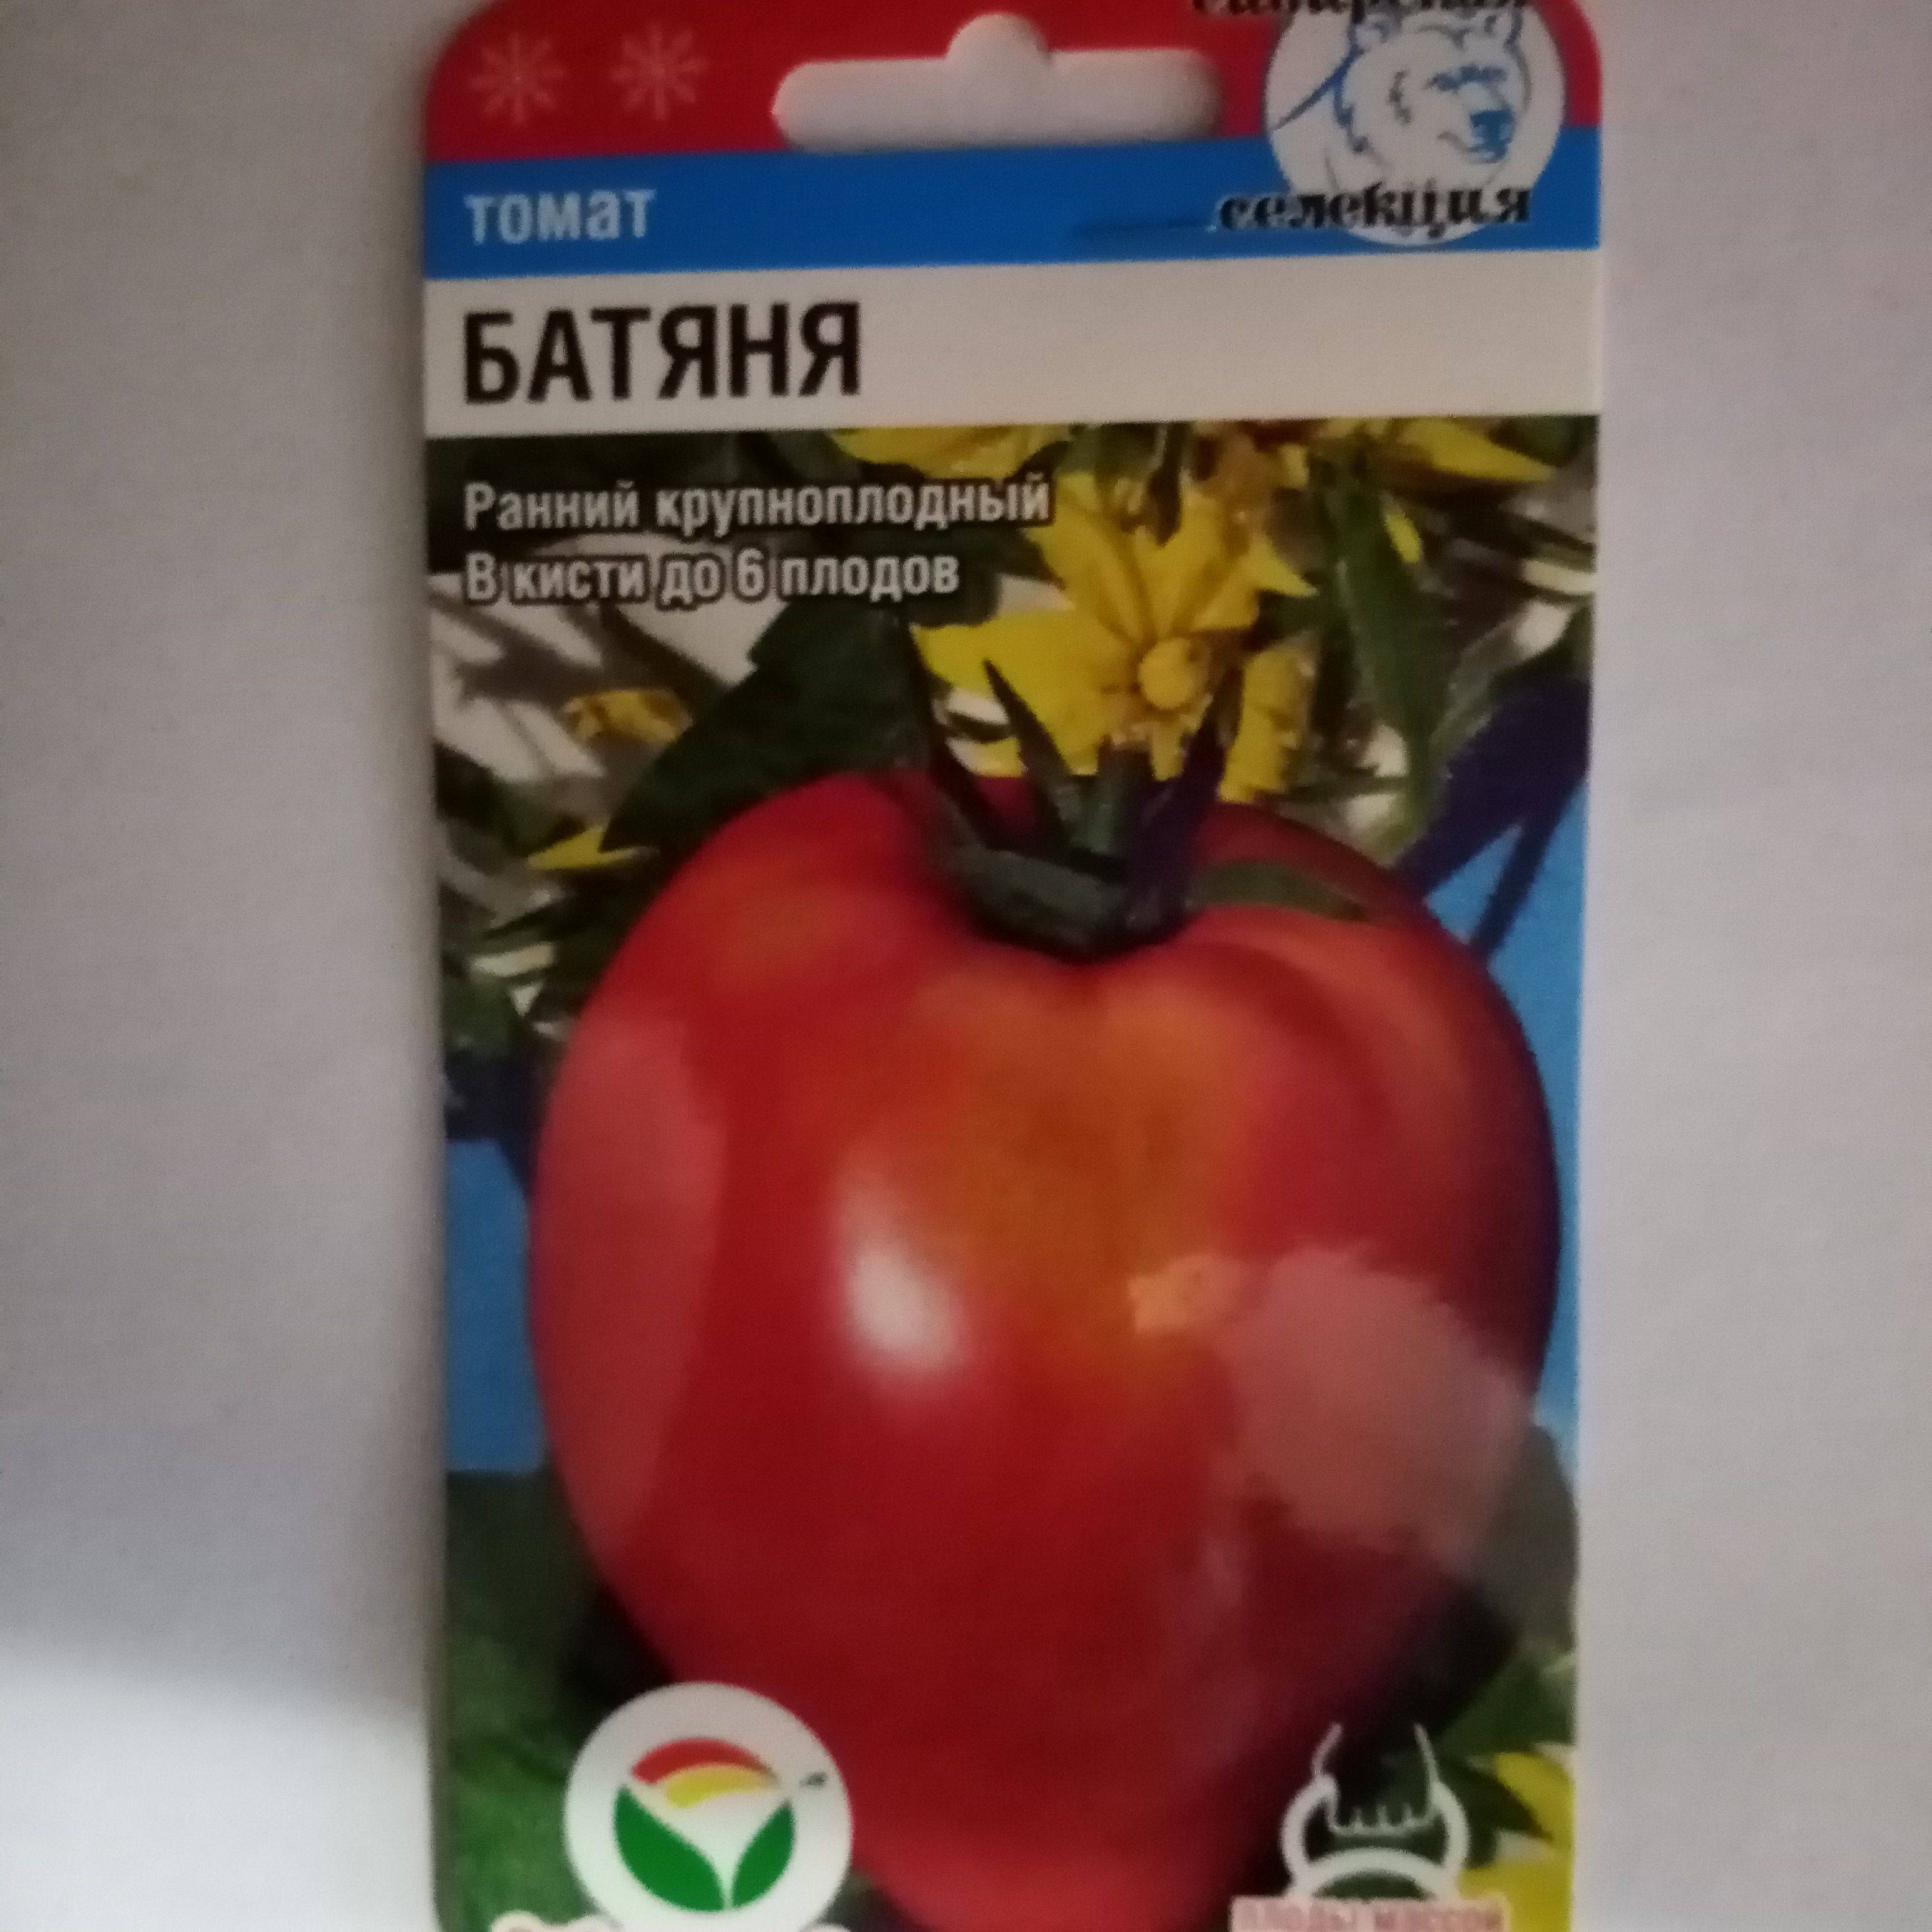 Томат батяня: характеристика и описание сорта, урожайность, отзывы с фото